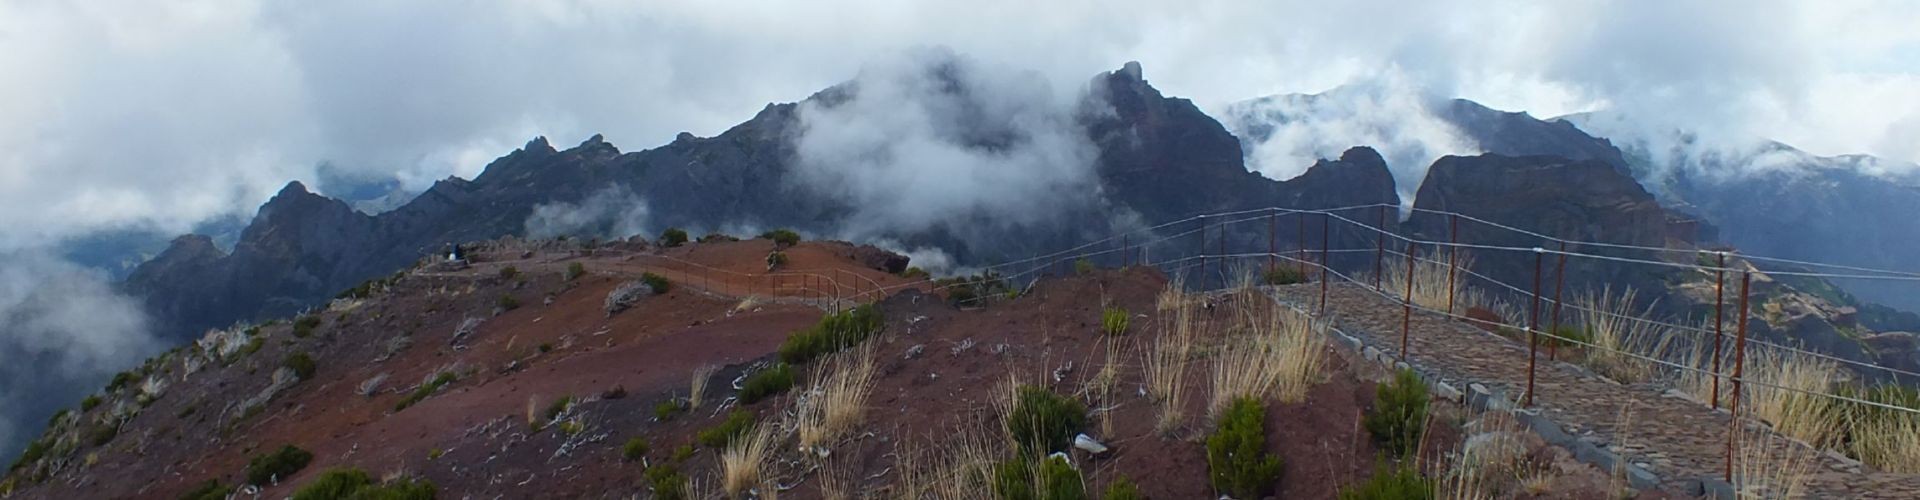 Miradouro do Pico Ruivo Viewpoint in Madeira Island